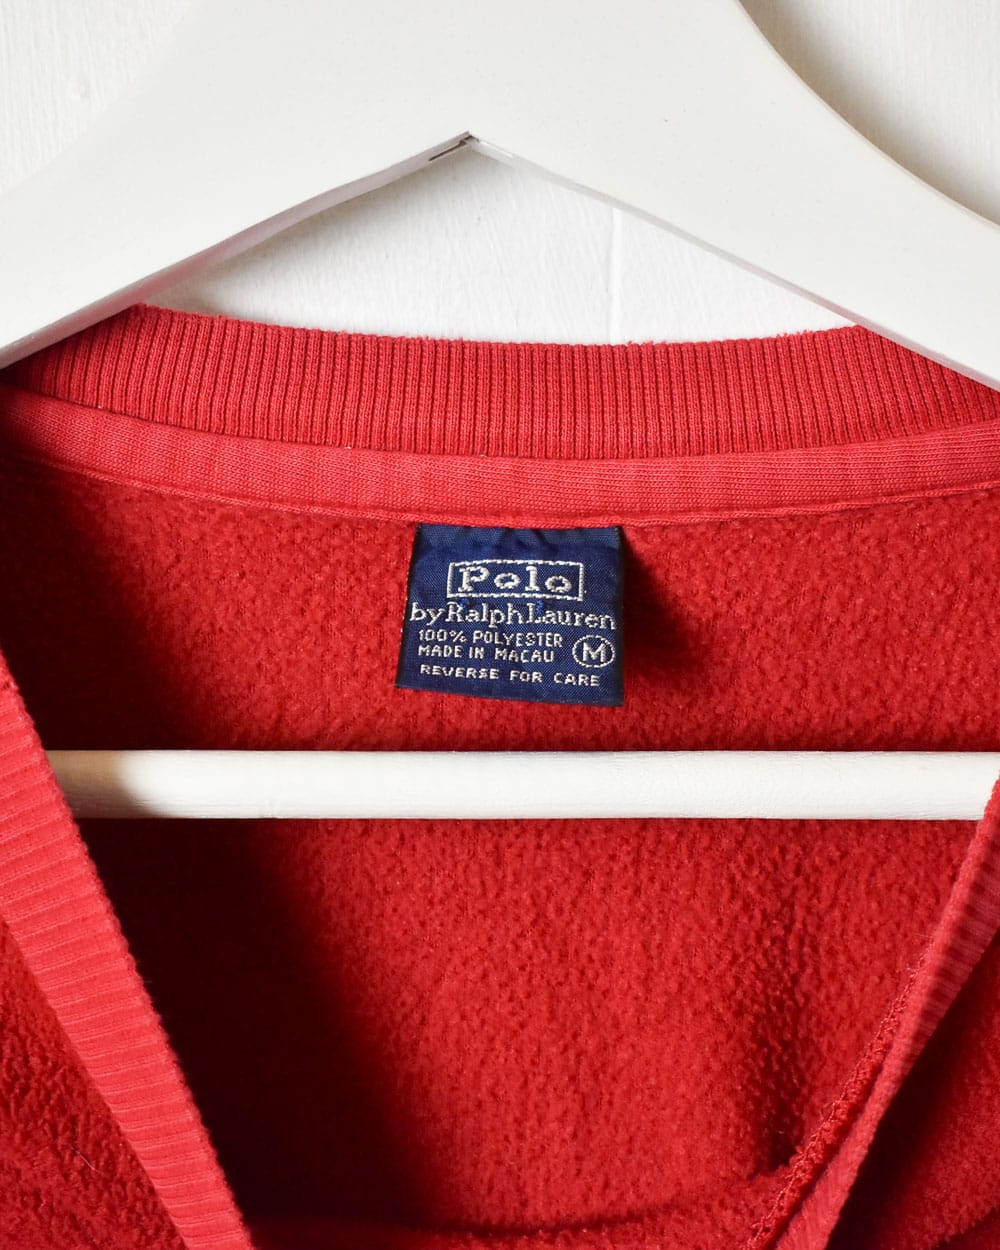 Red Polo Ralph Lauren Fleece Sweatshirt - Small